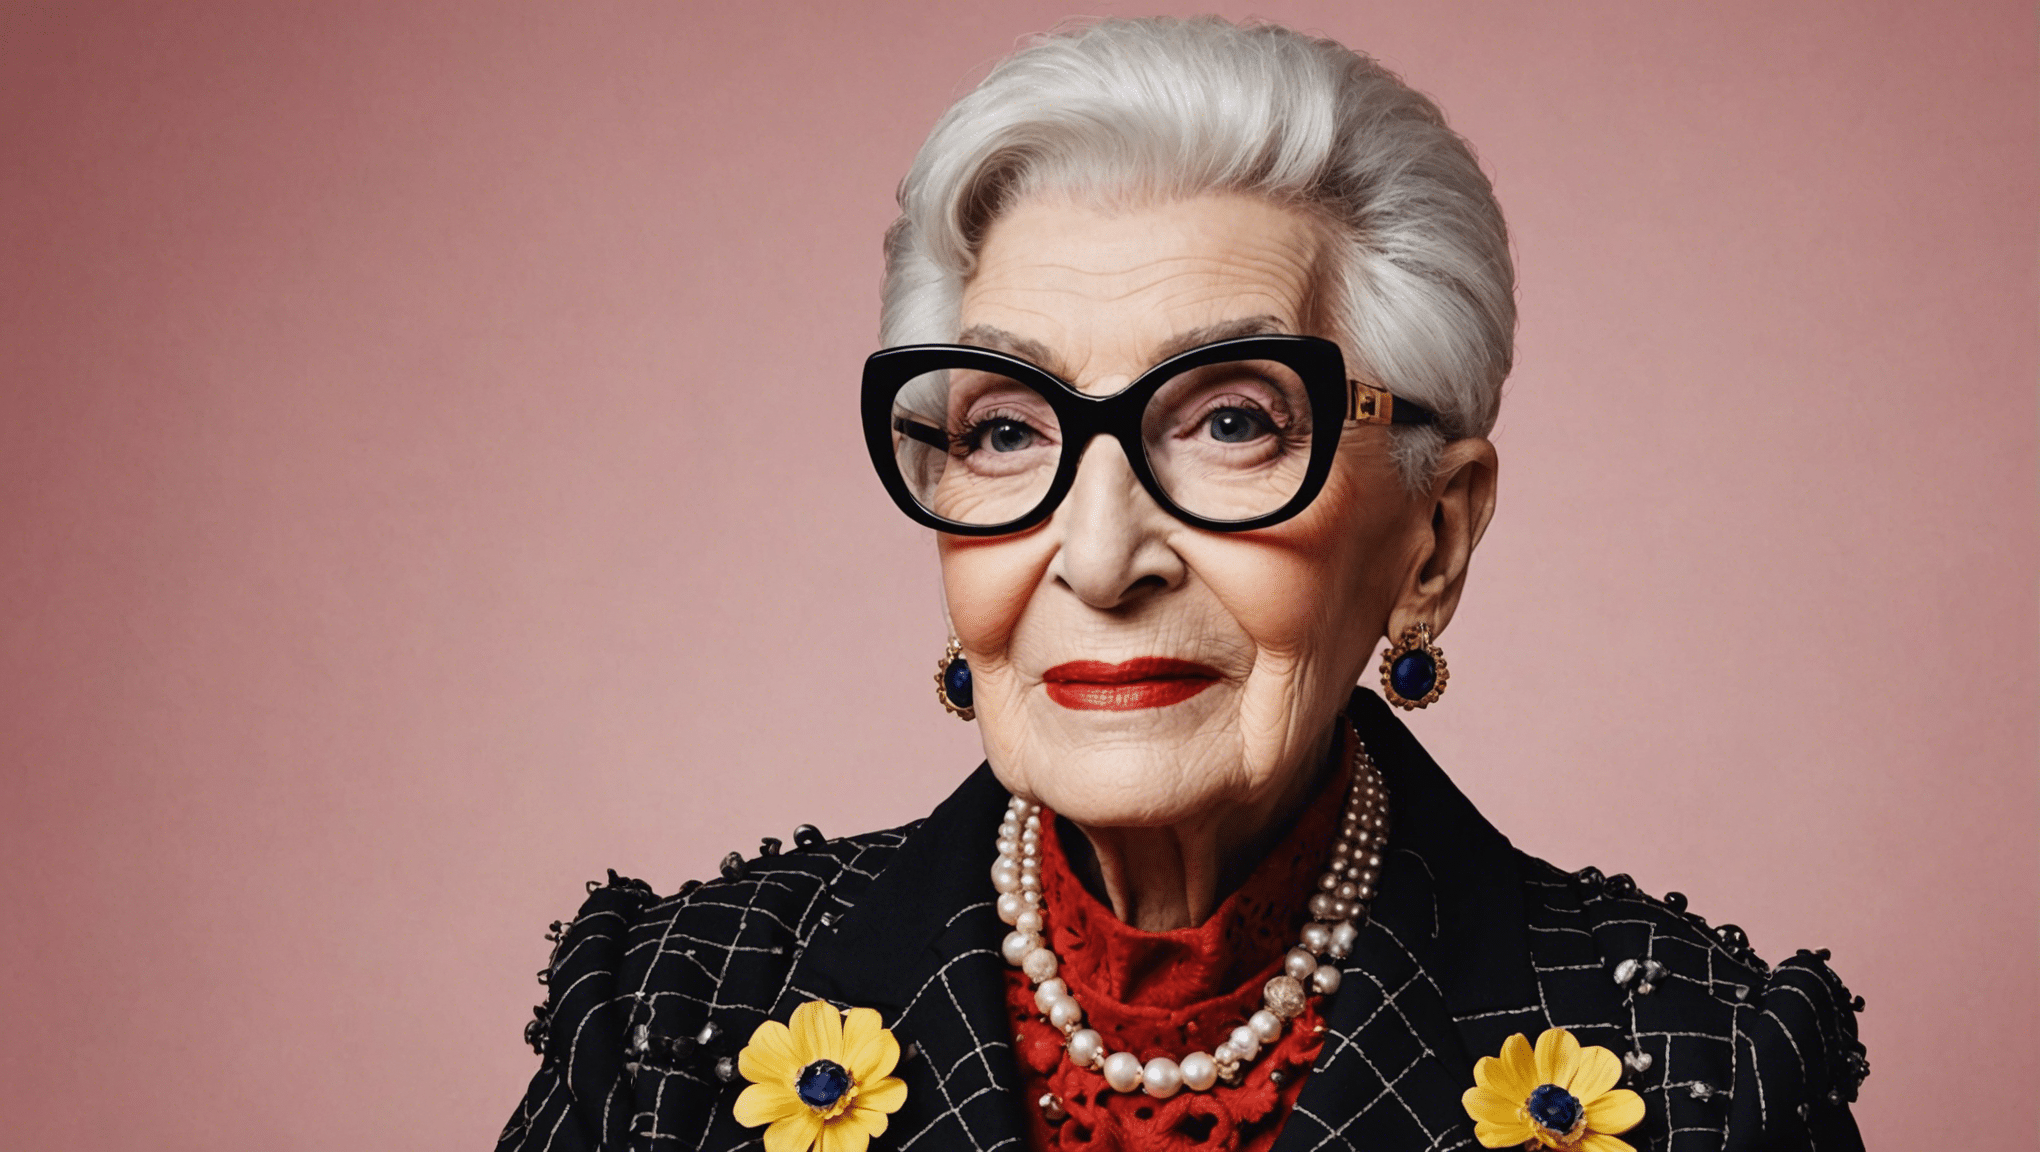 iris apfel, l'icône de mode centenaire, est-elle vraiment morte ? découvrez sa vie excentrique et son héritage fashion !